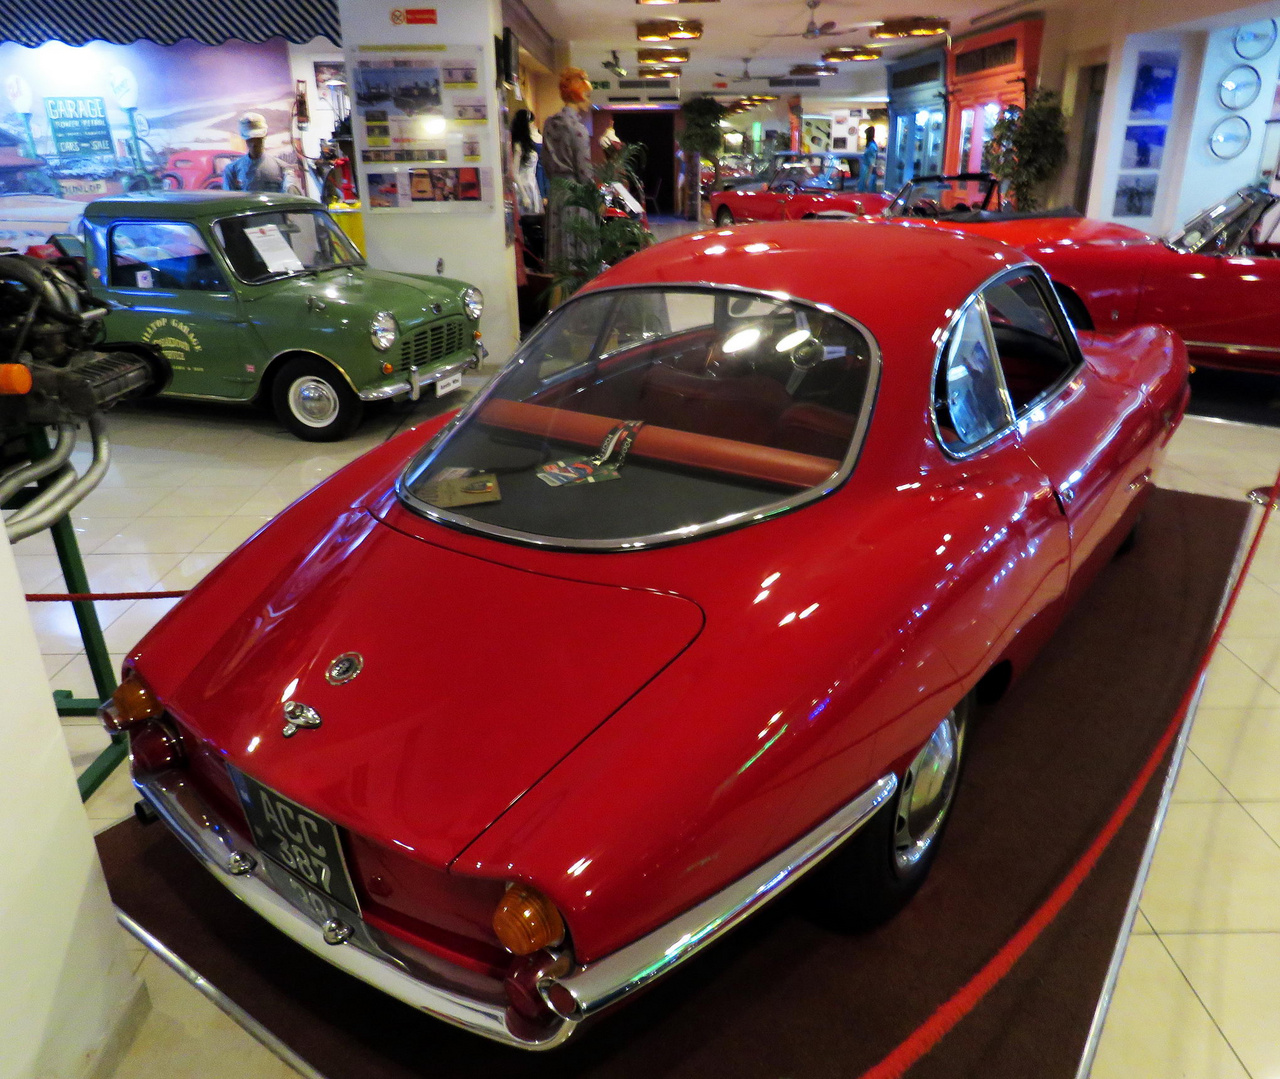 Az Alfa Romeo Giulietta Sprint Speciale elég nagy ritkaság, tekintve, hogy mindössze 101 darab készült belőle. Egy minimum százdarabos szériára volt szükség, hogy homologizálják a típust, és az Alfa, biztos, ami biztos icipicit túlteljesítette ezt az előírást. Az 1959-ben legyártott autókba 1300 köbcentis Twin Cam motorokat építettek be, a naftát Weber karburátorok porlasztották be a hemi égéstérbe.